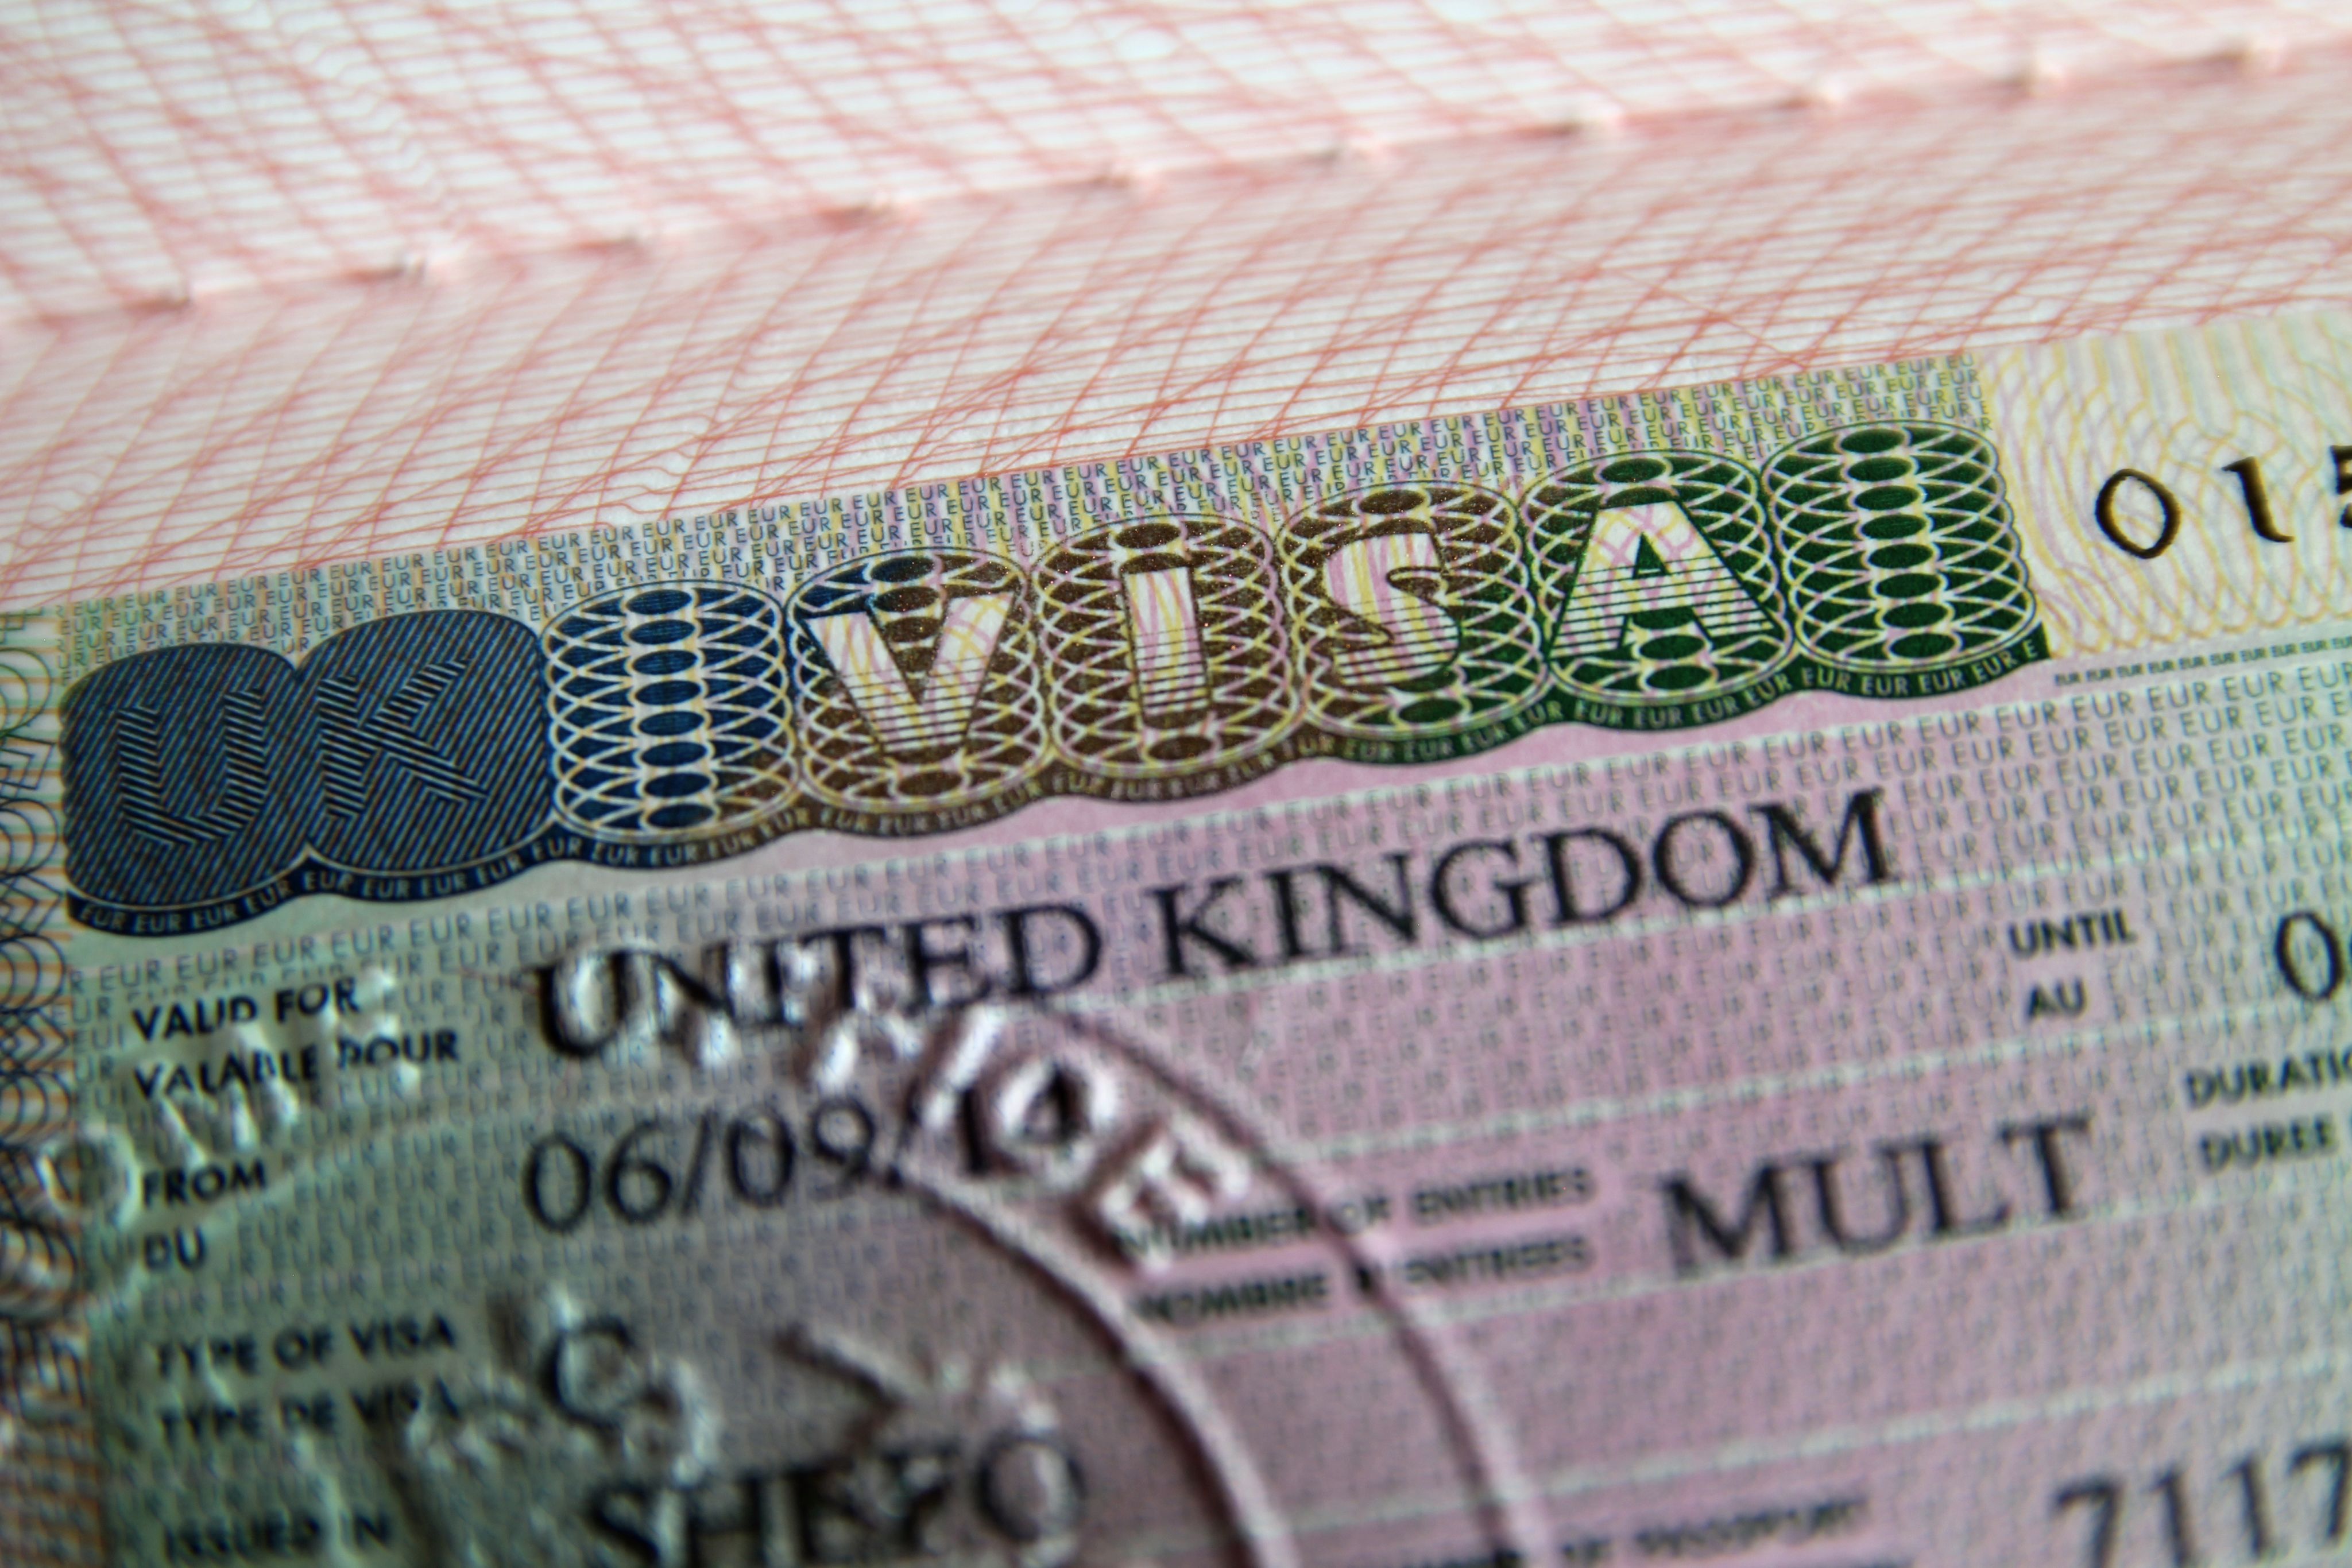 United Kingdom visa